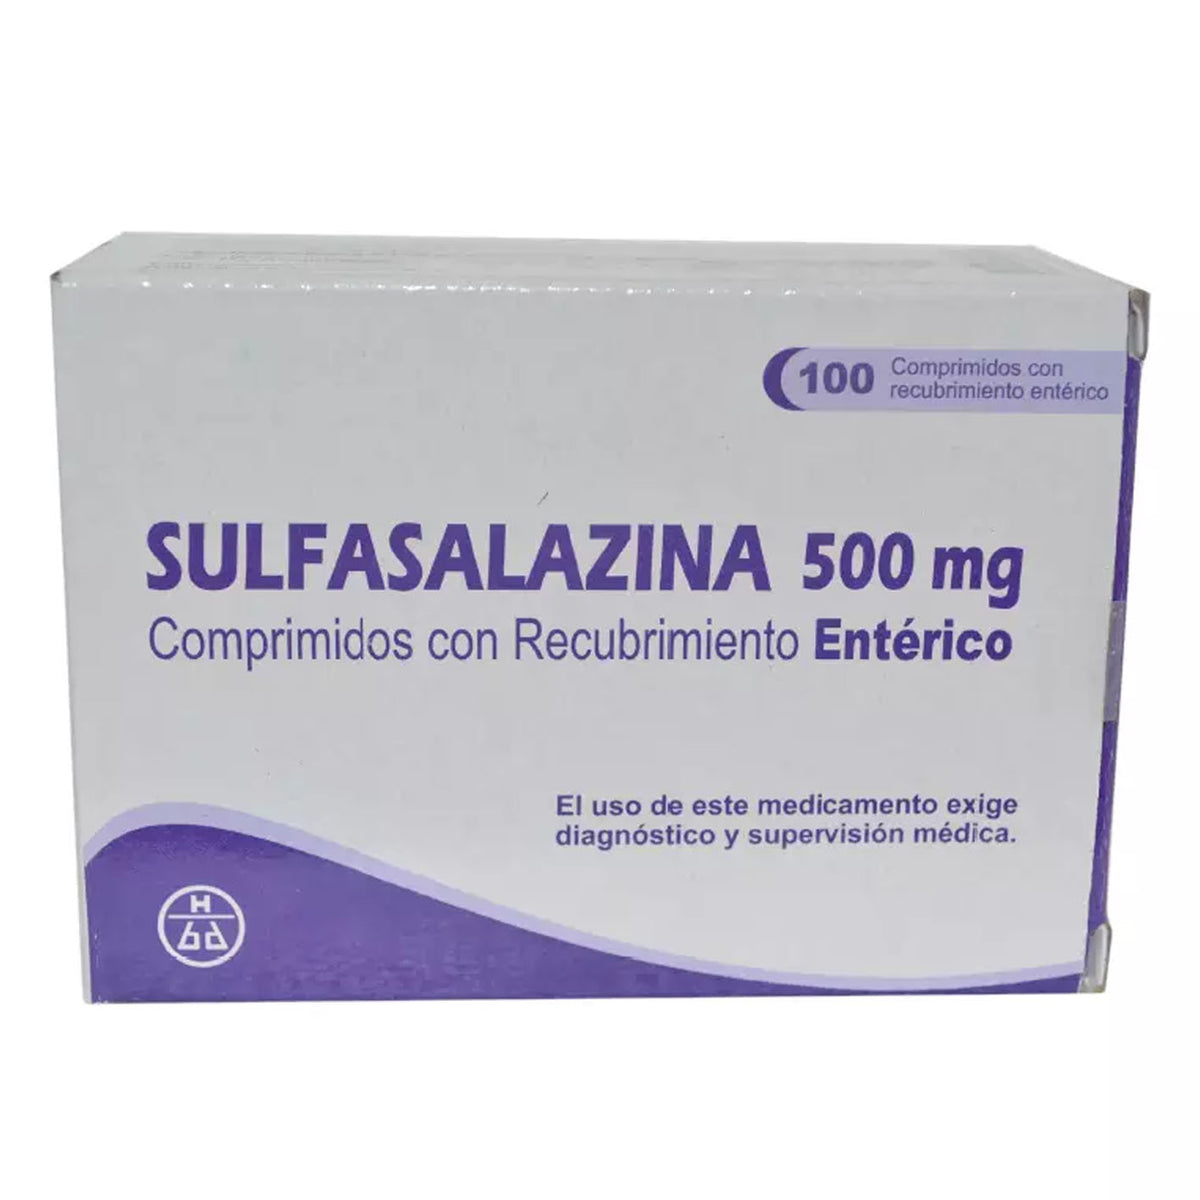 Sulfasalazina Comprimidos con Recubrimiento Entérico 500mg